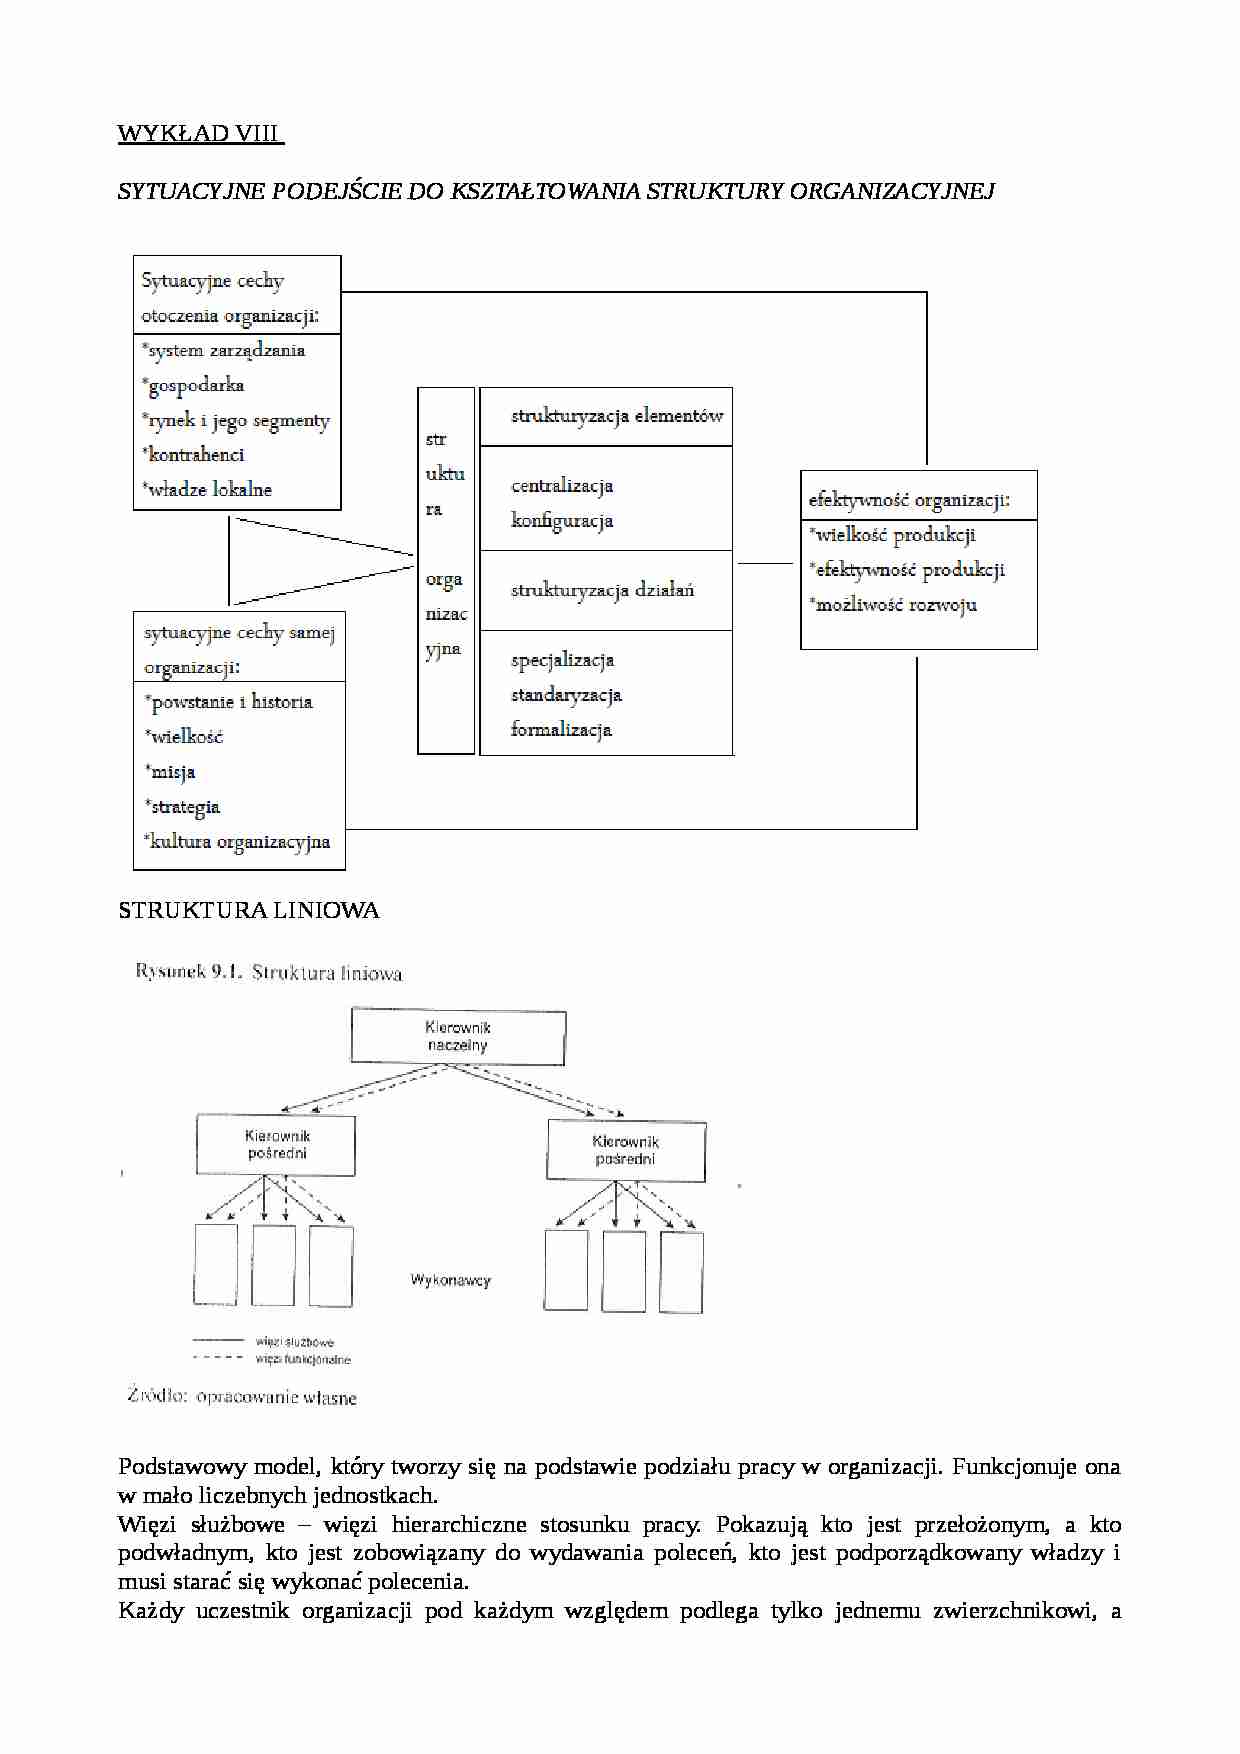 Kształtowanie struktury organziacyjnej - zarządzanie  - strona 1